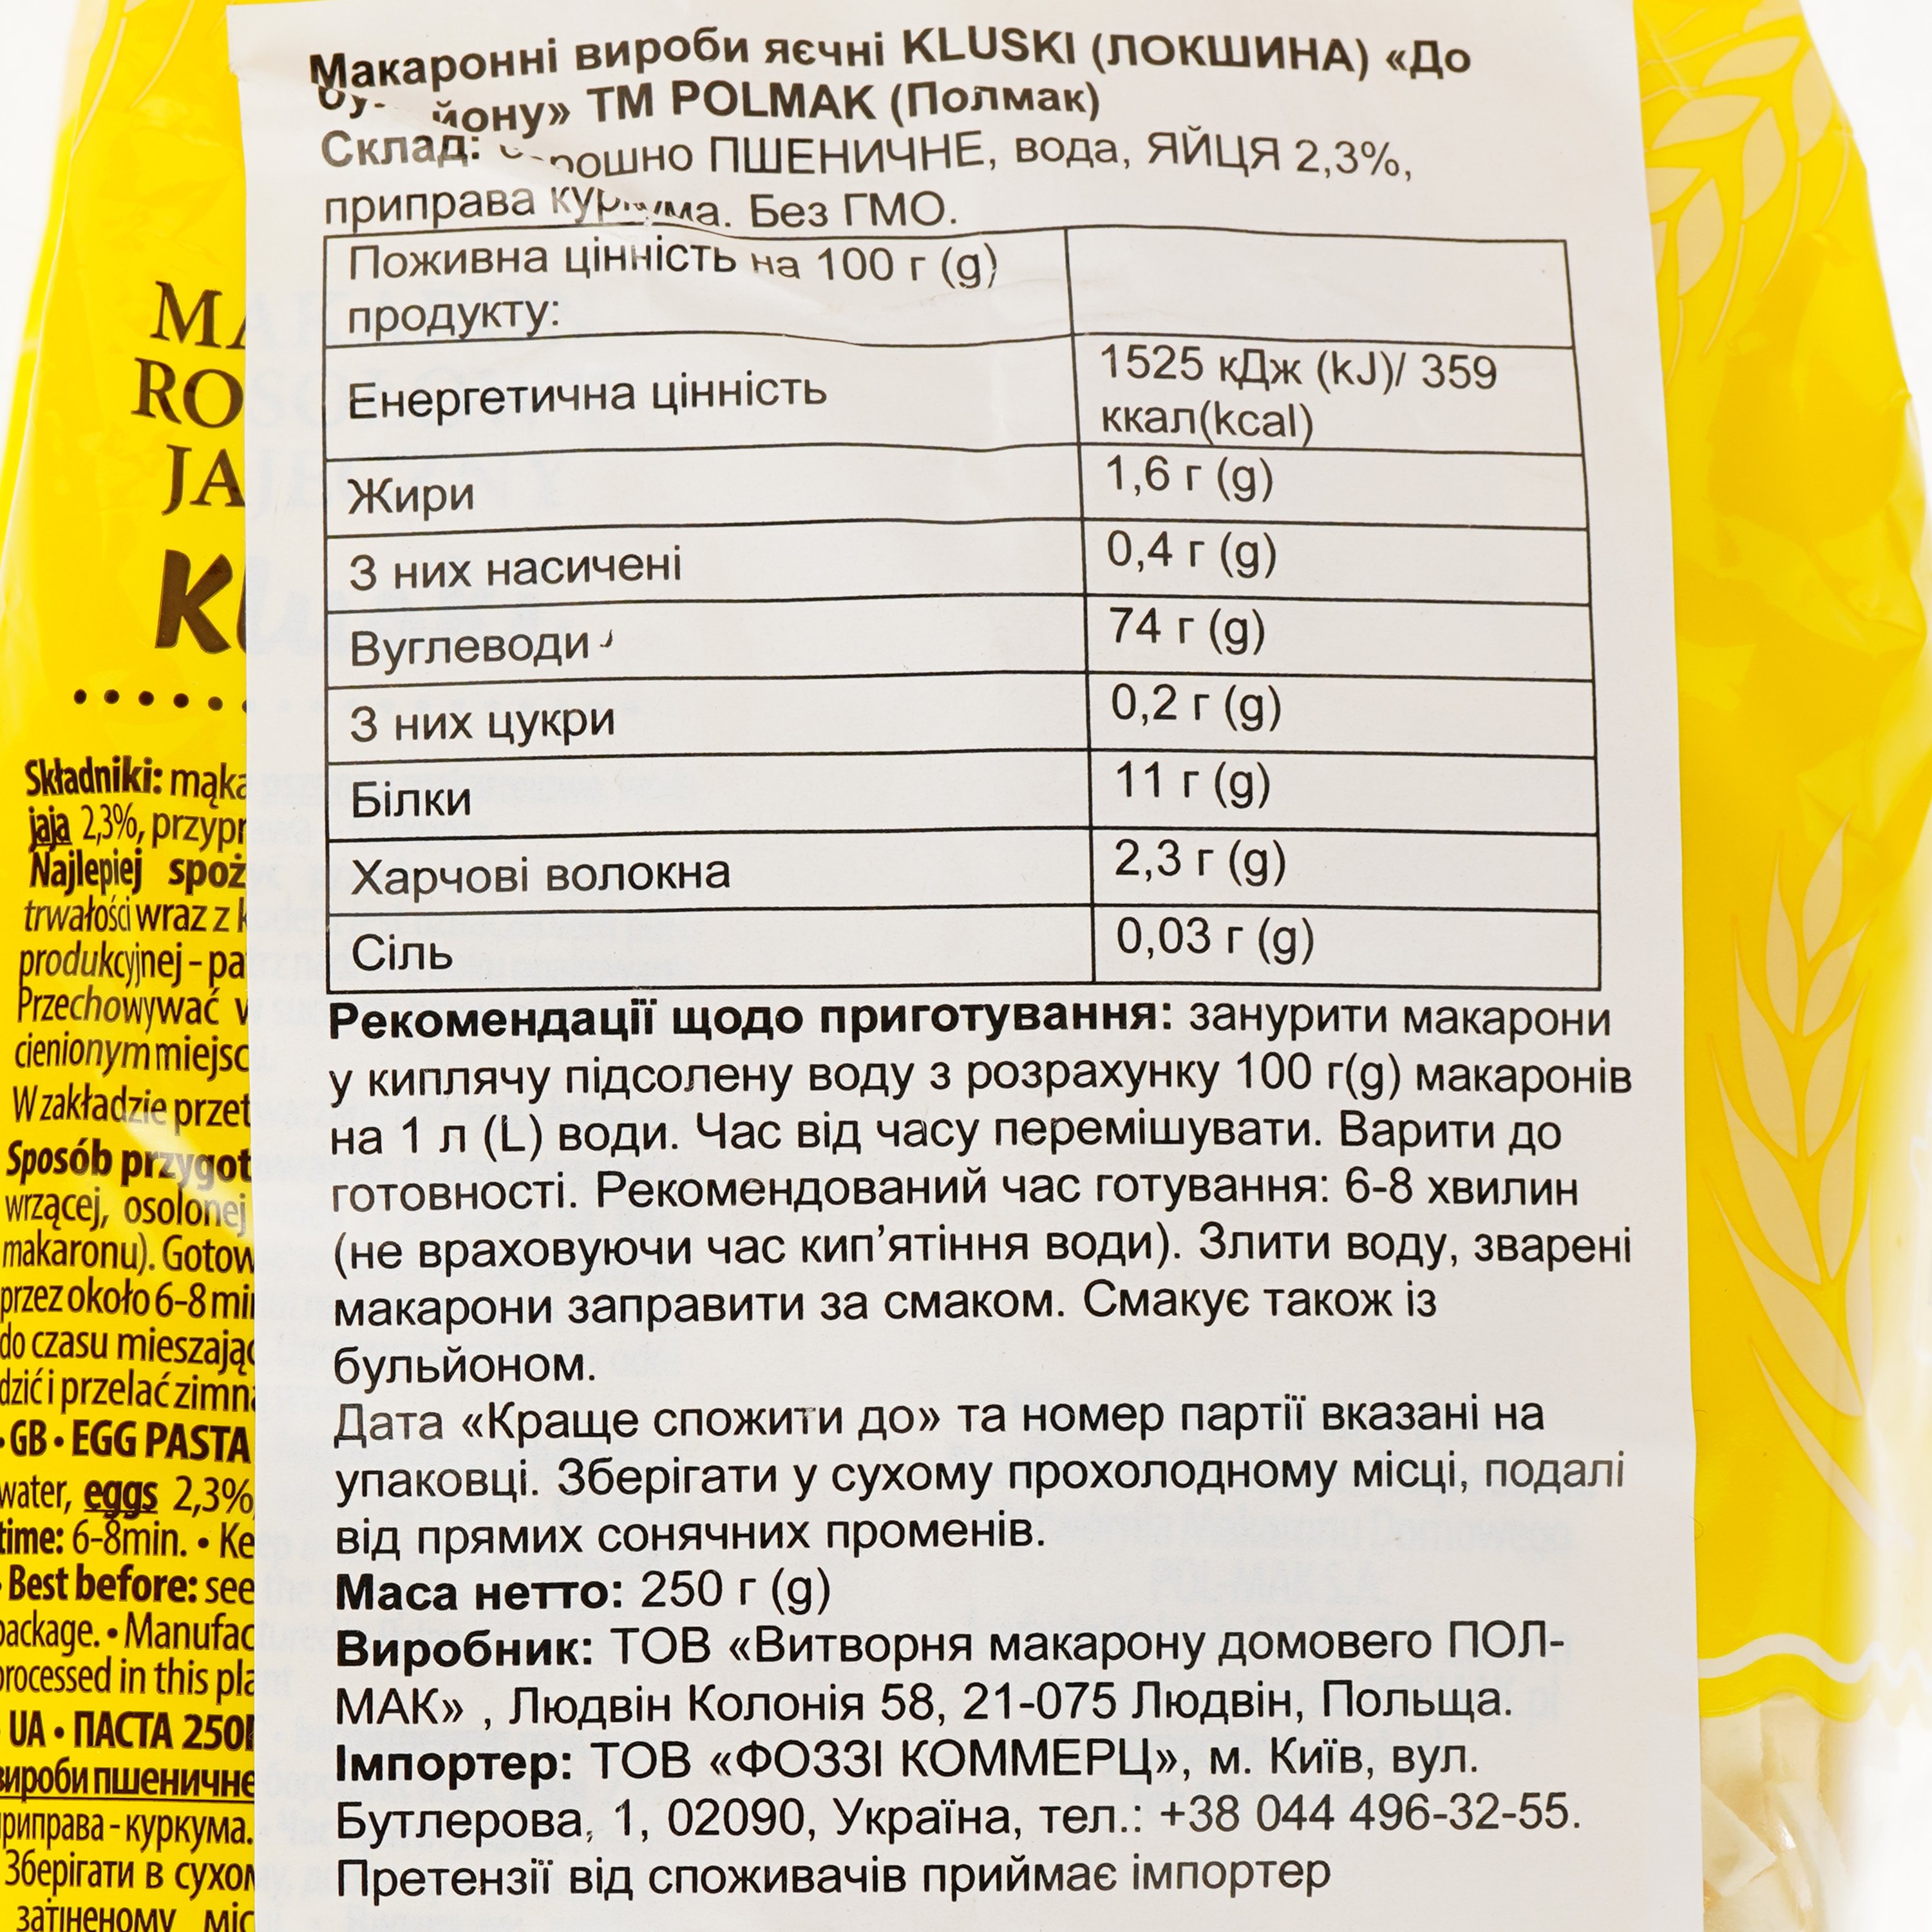 Вироби макаронні Polmak Kluski До бульйону, яєчні, 250 г (920054) - фото 4